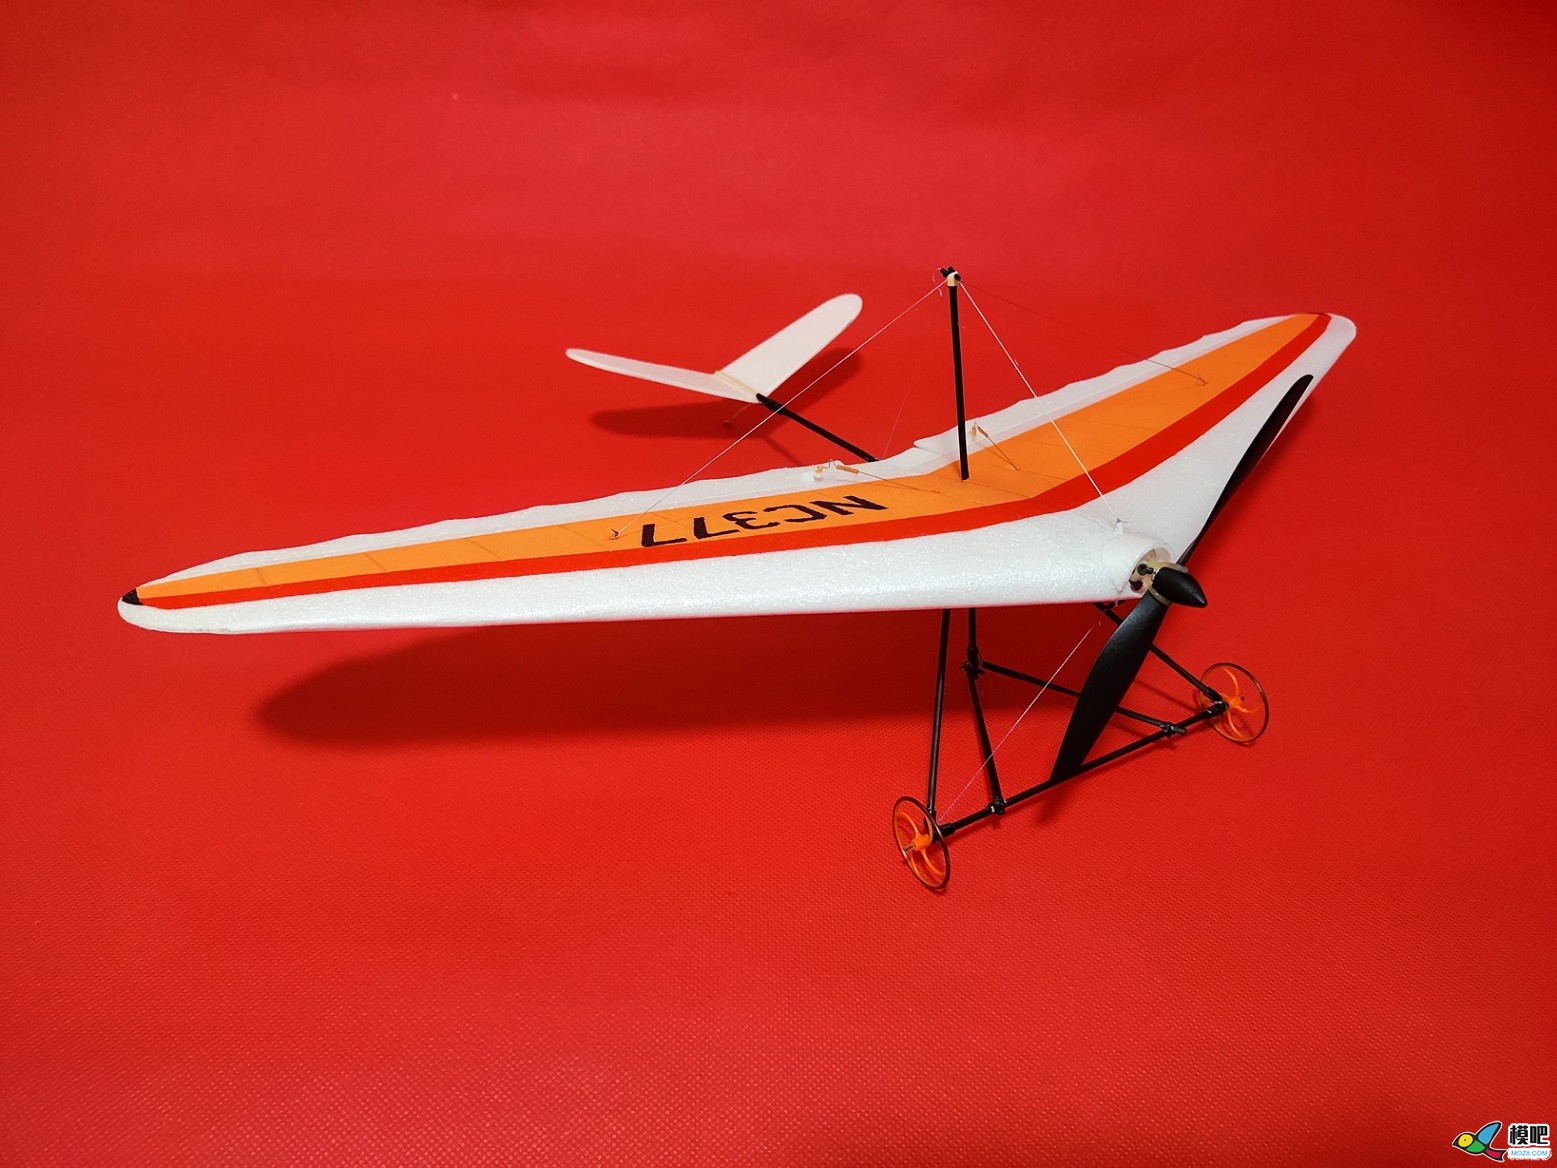 【爱因制造】自制不知名滑翔飞翼机 电池,图纸,接收机,飞翼,滑翔伞 作者:xbnlkdbxl 4552 